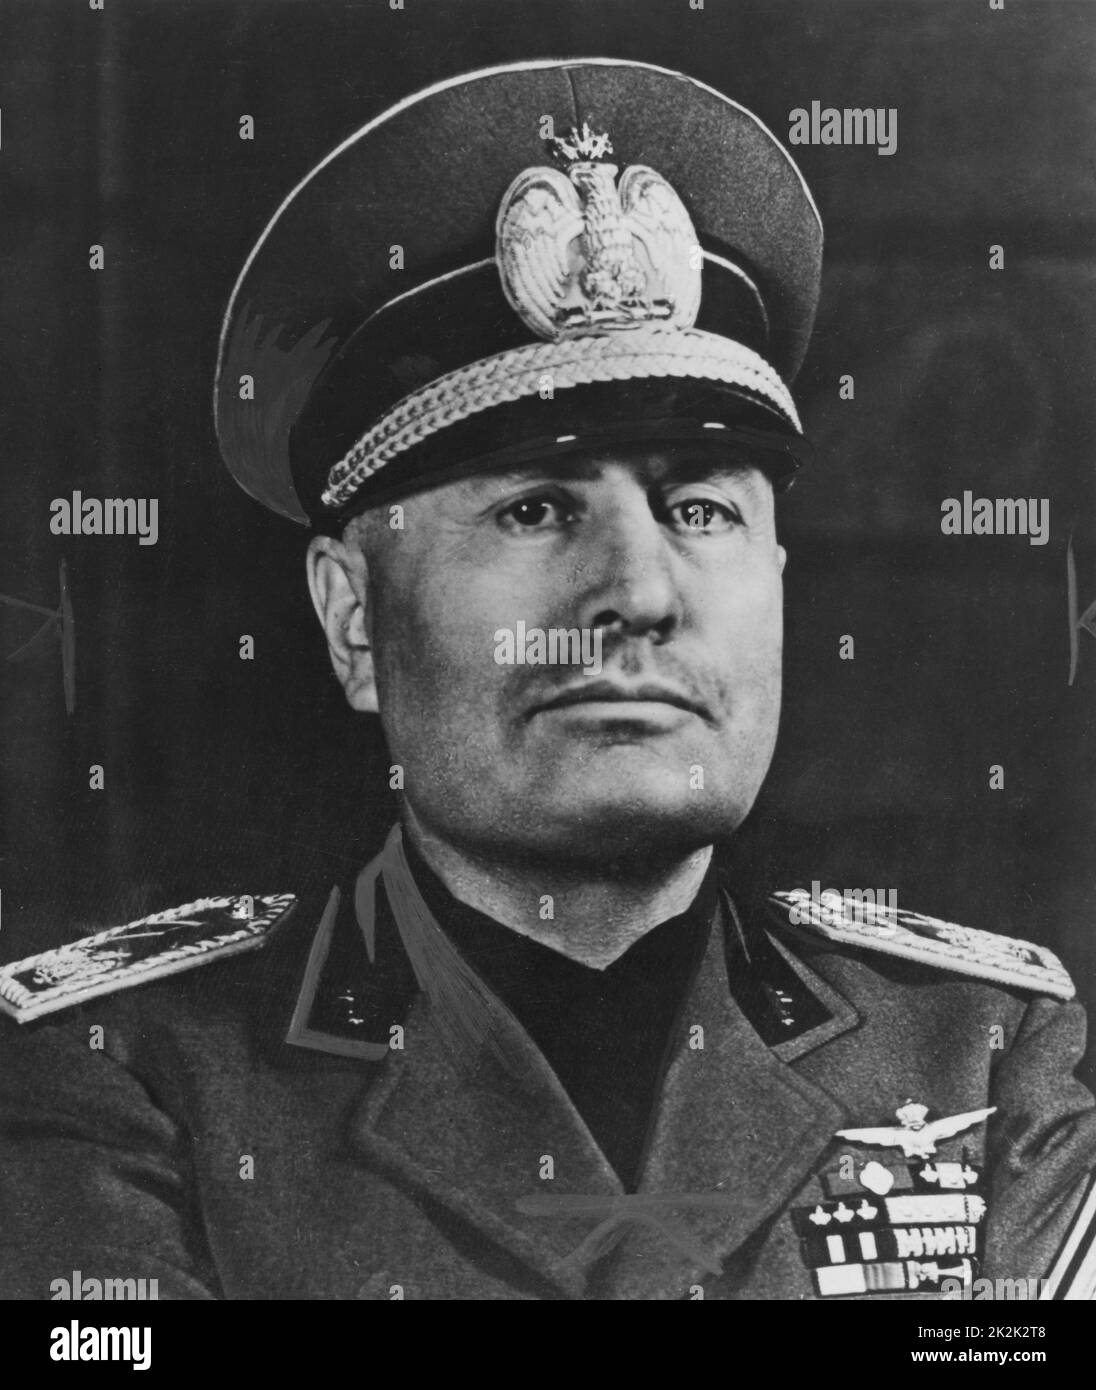 Ritratto dello statista italiano Benito Mussolini nel 1942. Fondò una dittatura fascista in Italia dal 1925 al 1943. Foto Stock